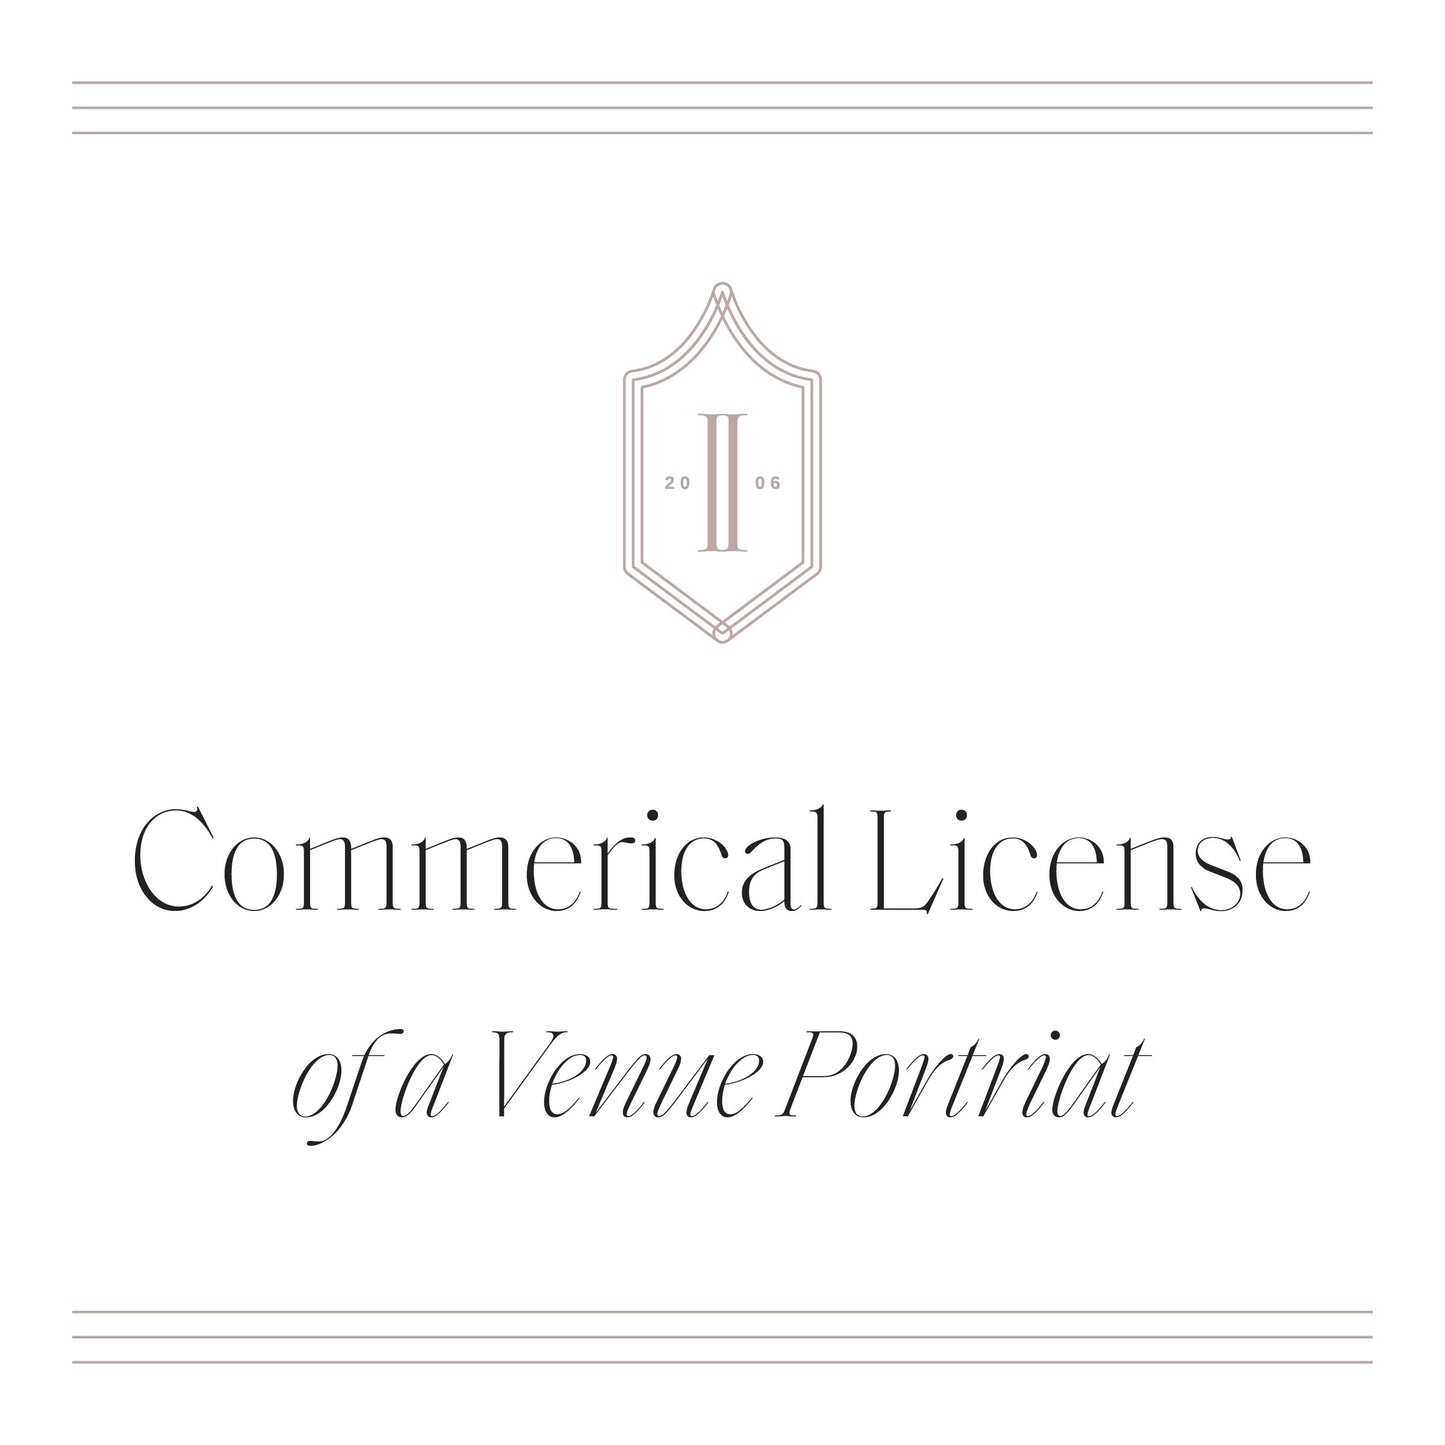 Commercial License of Venue Portrait